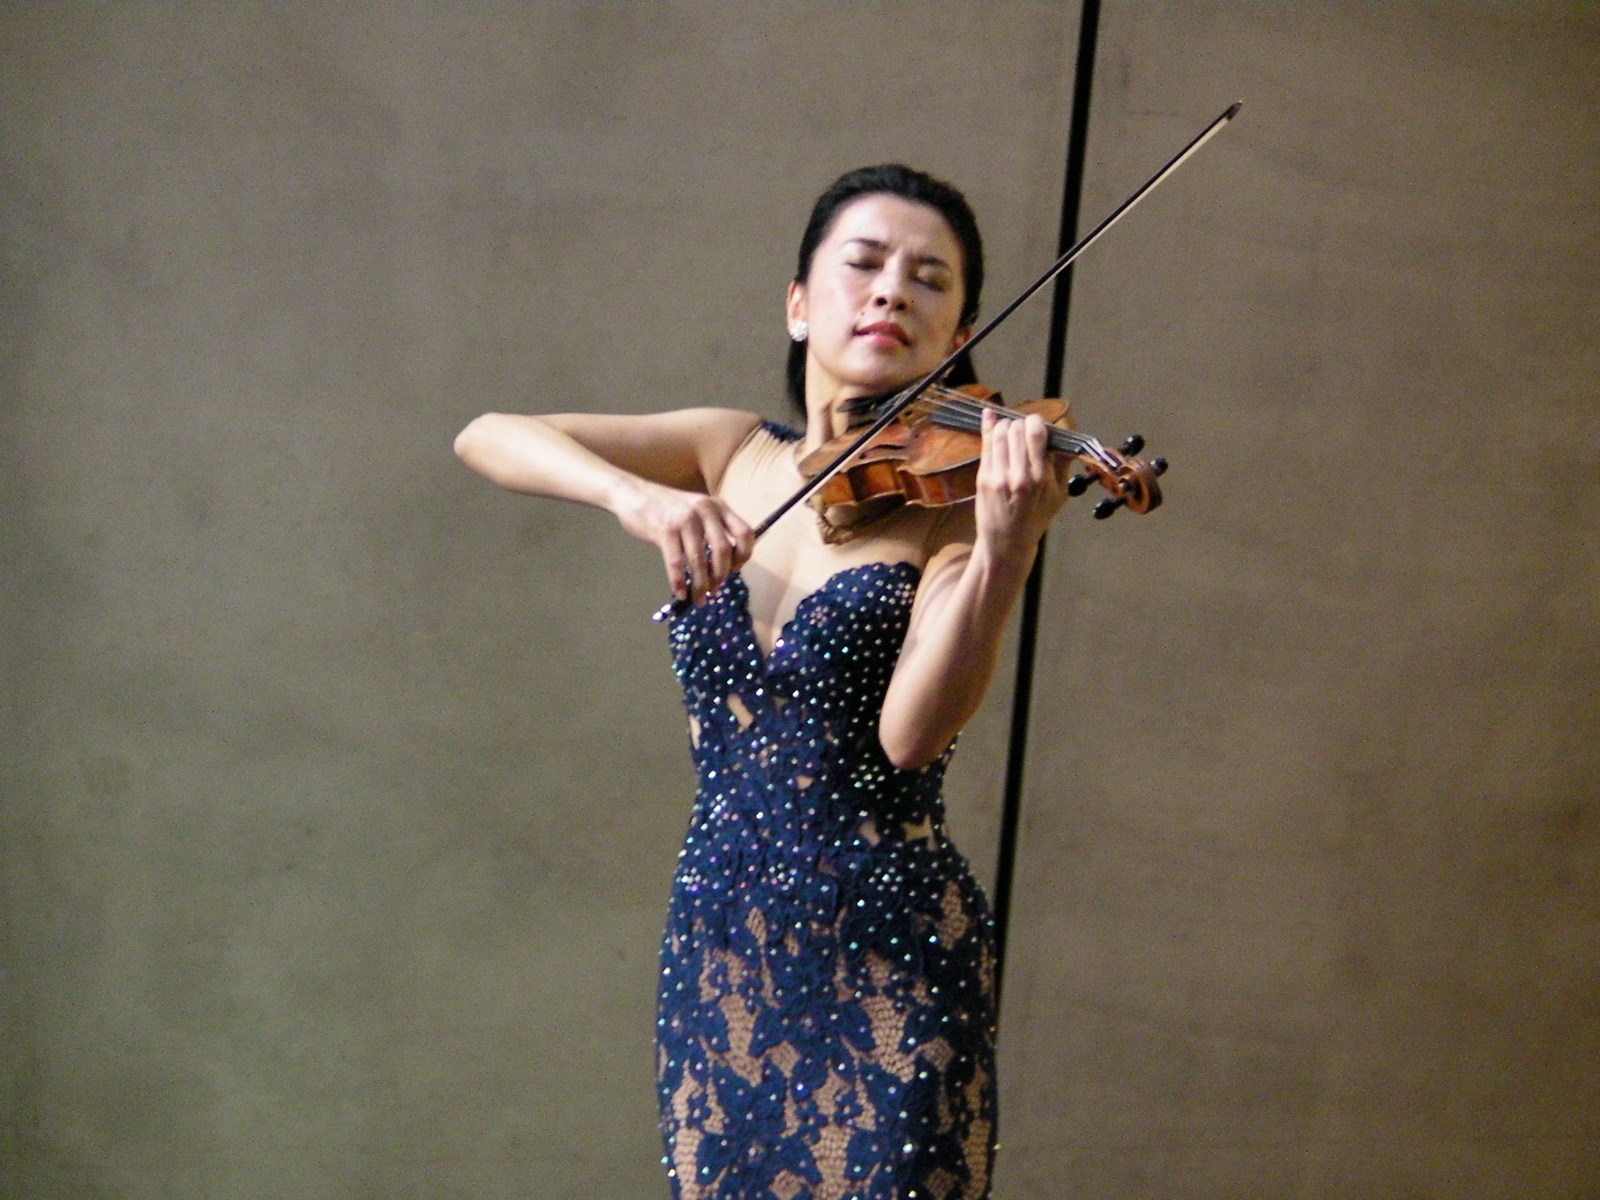 内覧会の同日に行われた開会式で、テーマ曲を演奏するヴァイオリニストの川井郁子。 美しくも儚い旋律のテーマ曲は音声ガイドでも聴くことができる。